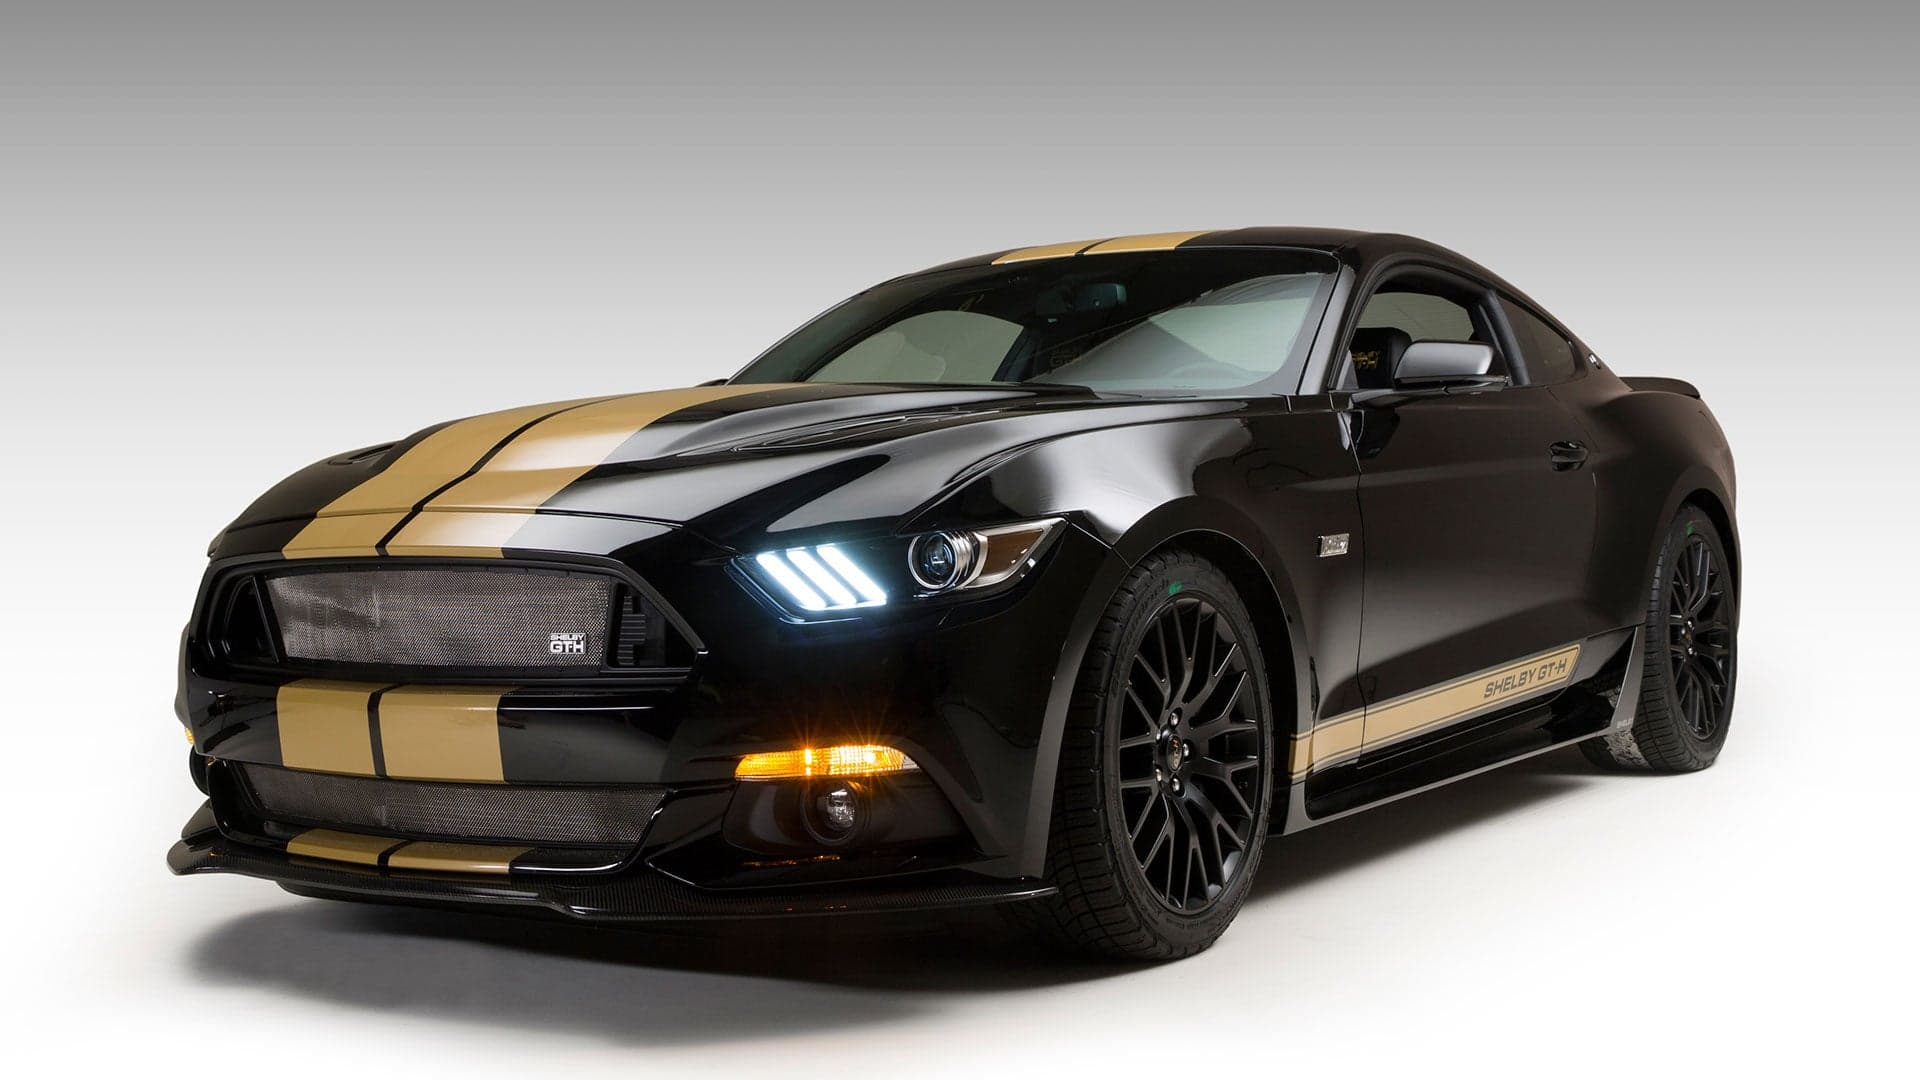 Rent-a-Racer Returns! Meet the New Shelby Mustang GT-H